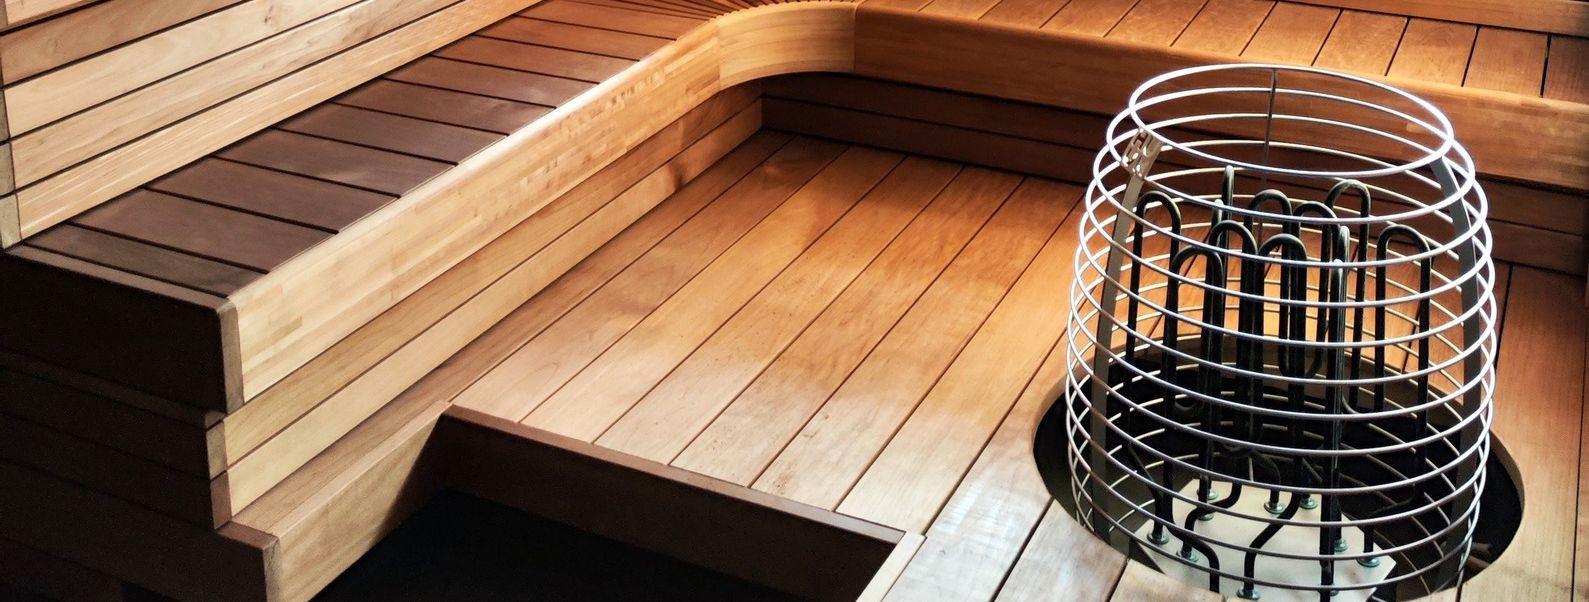 Sauna hooldamine on oluline selle pikaealisuse, ohutuse ja terapeutiliste ...